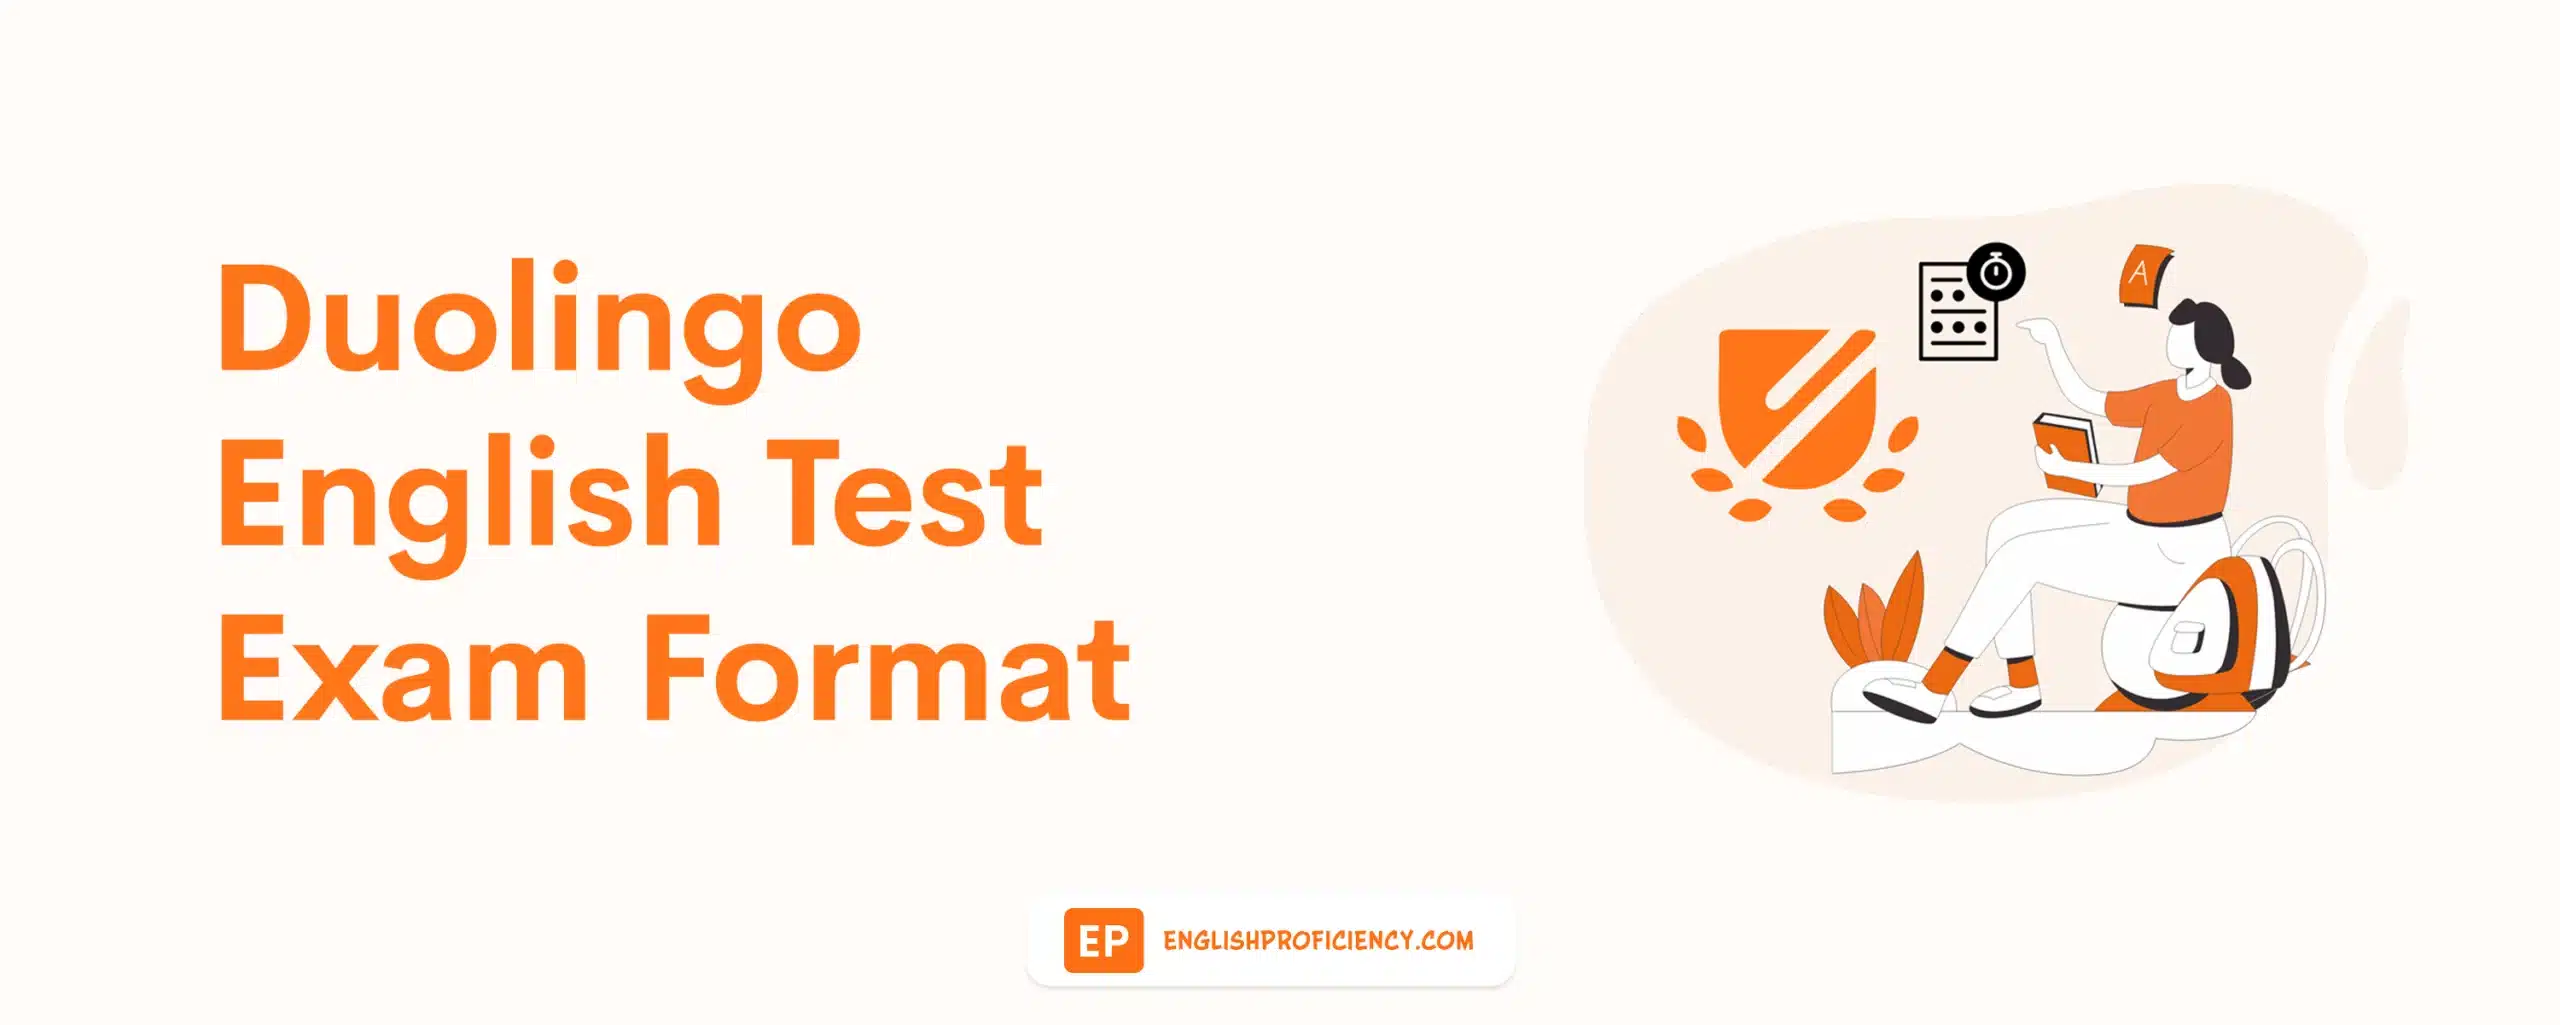 Duolingo English Test Exam Pattern